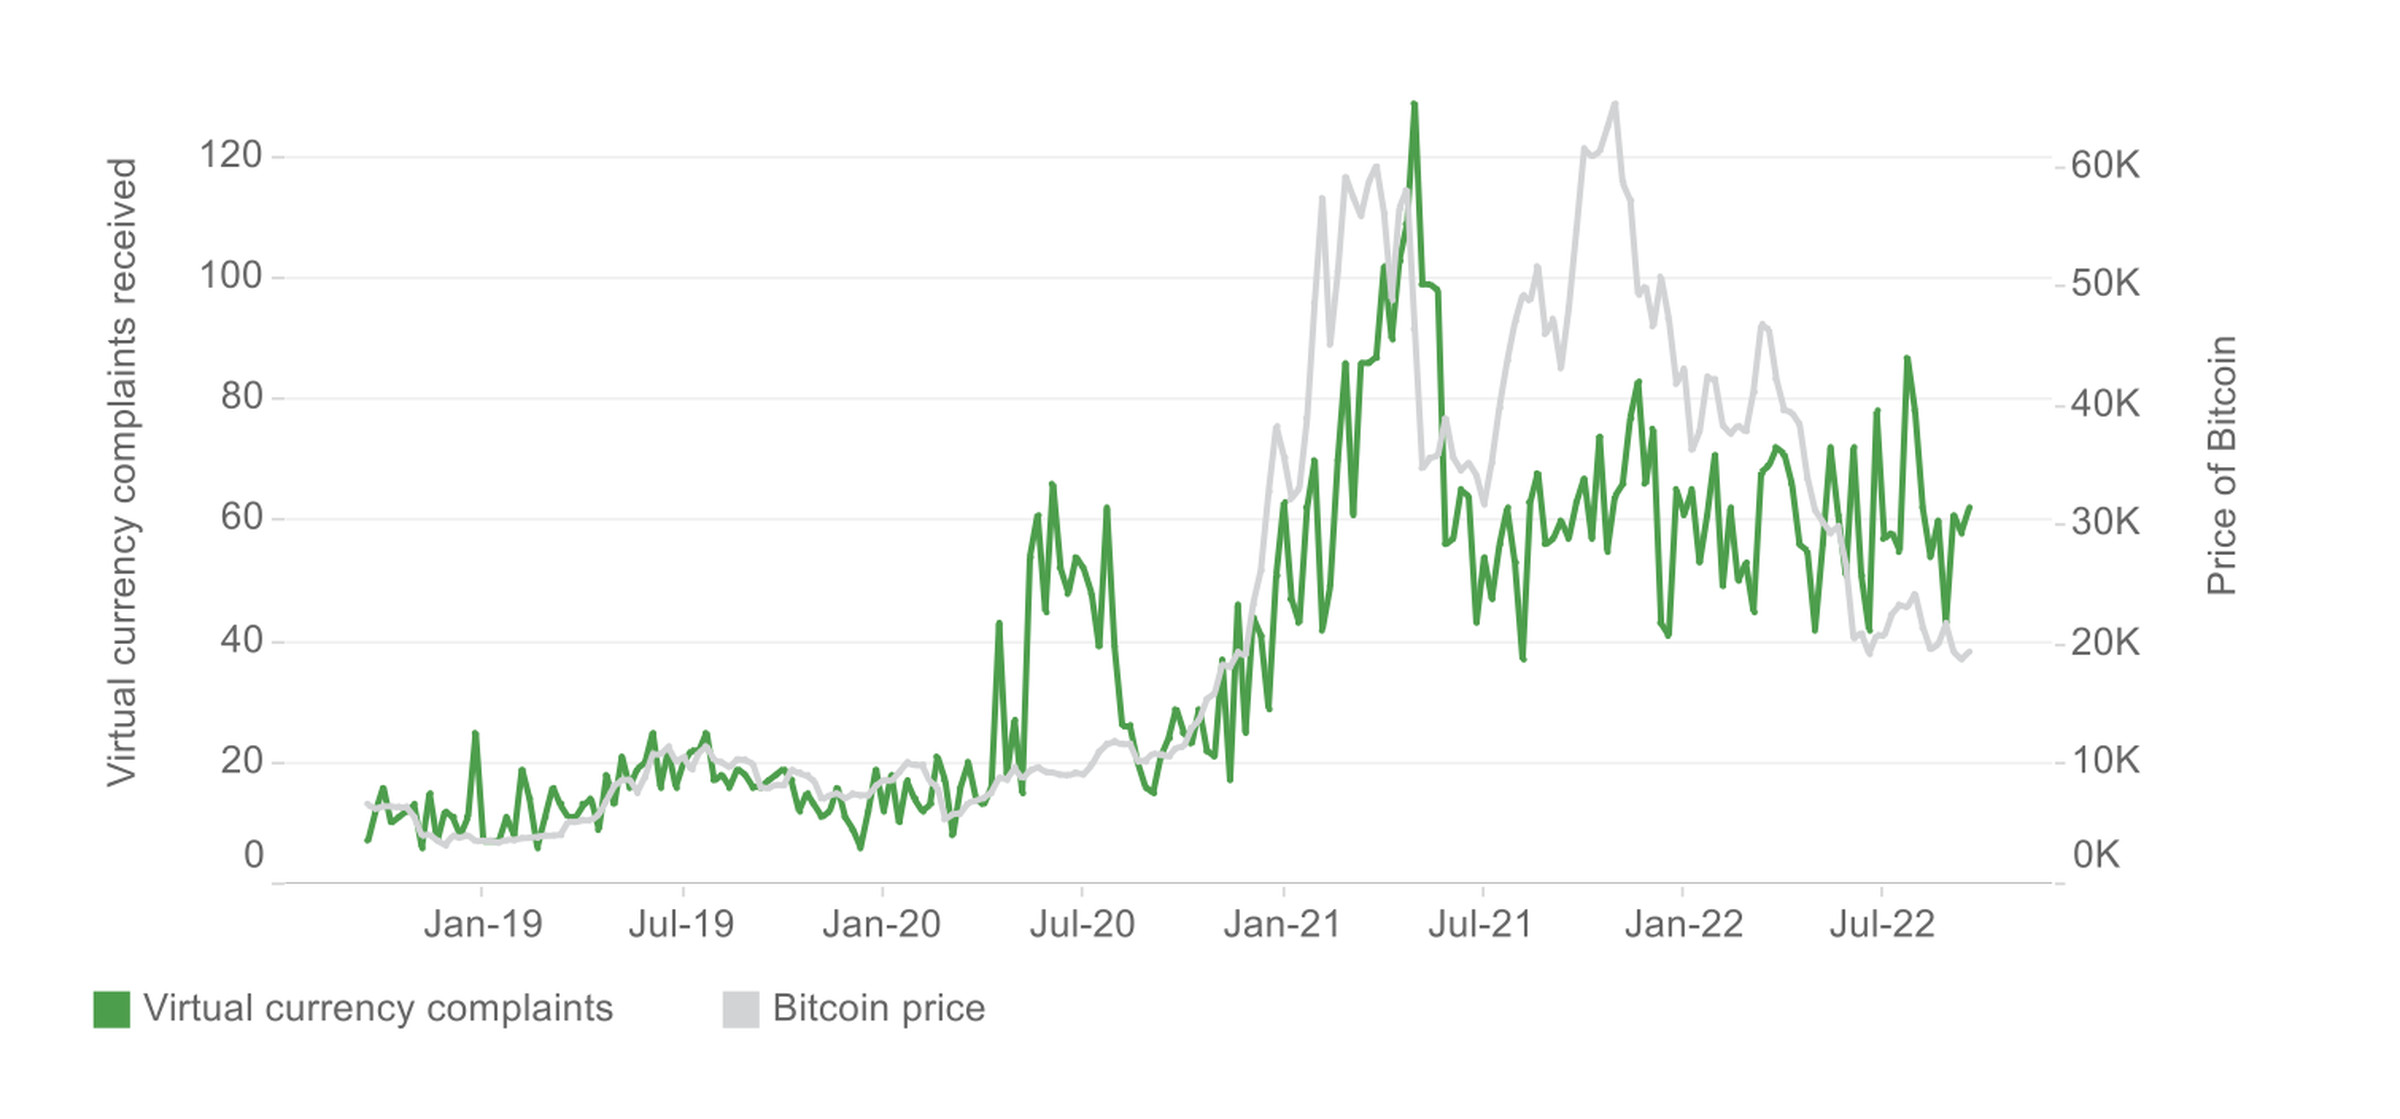 Ocak 2019 ile Temmuz 2022 arasında yükselen Bitcoin fiyatını ve sanal para birimi şikayetlerinin sayısını gösteren grafik.